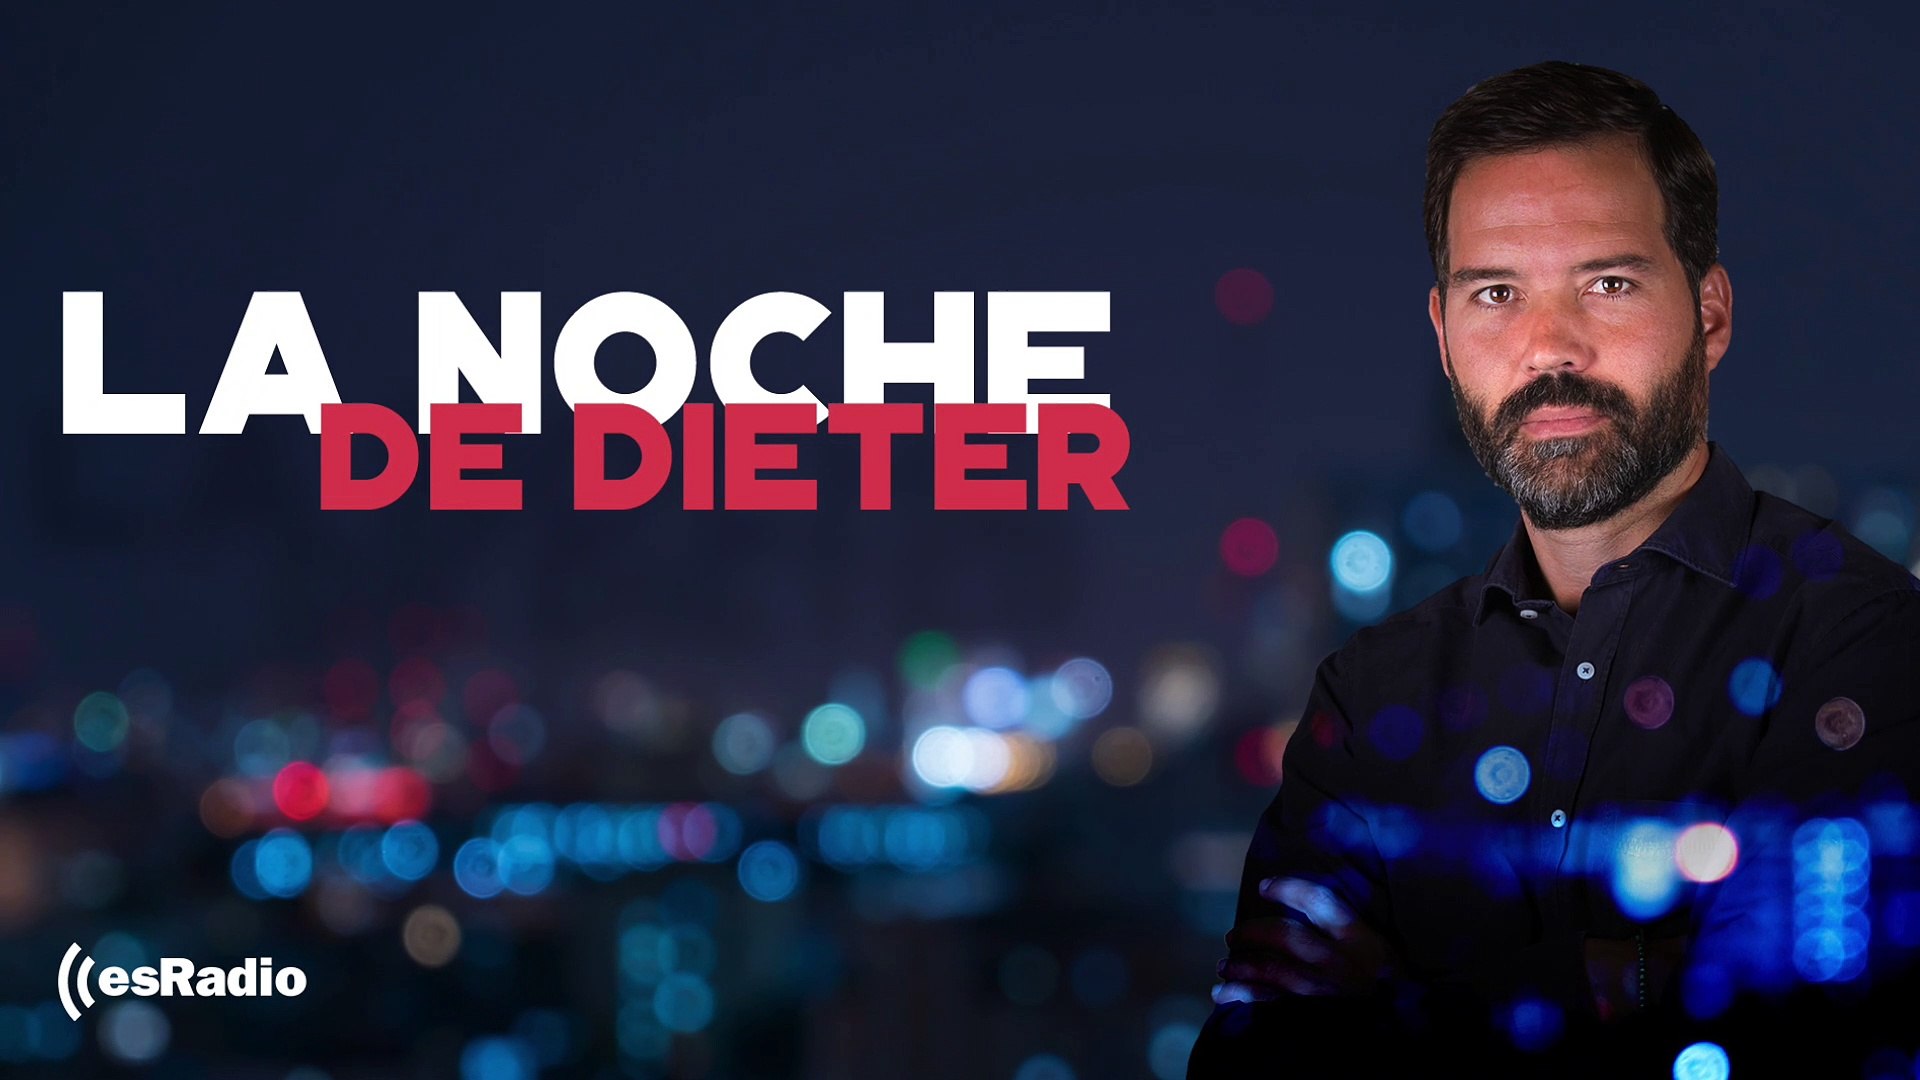 Santiago Abascal entrevistado en 'Es la Noche de Dieter' - Vídeo Dailymotion